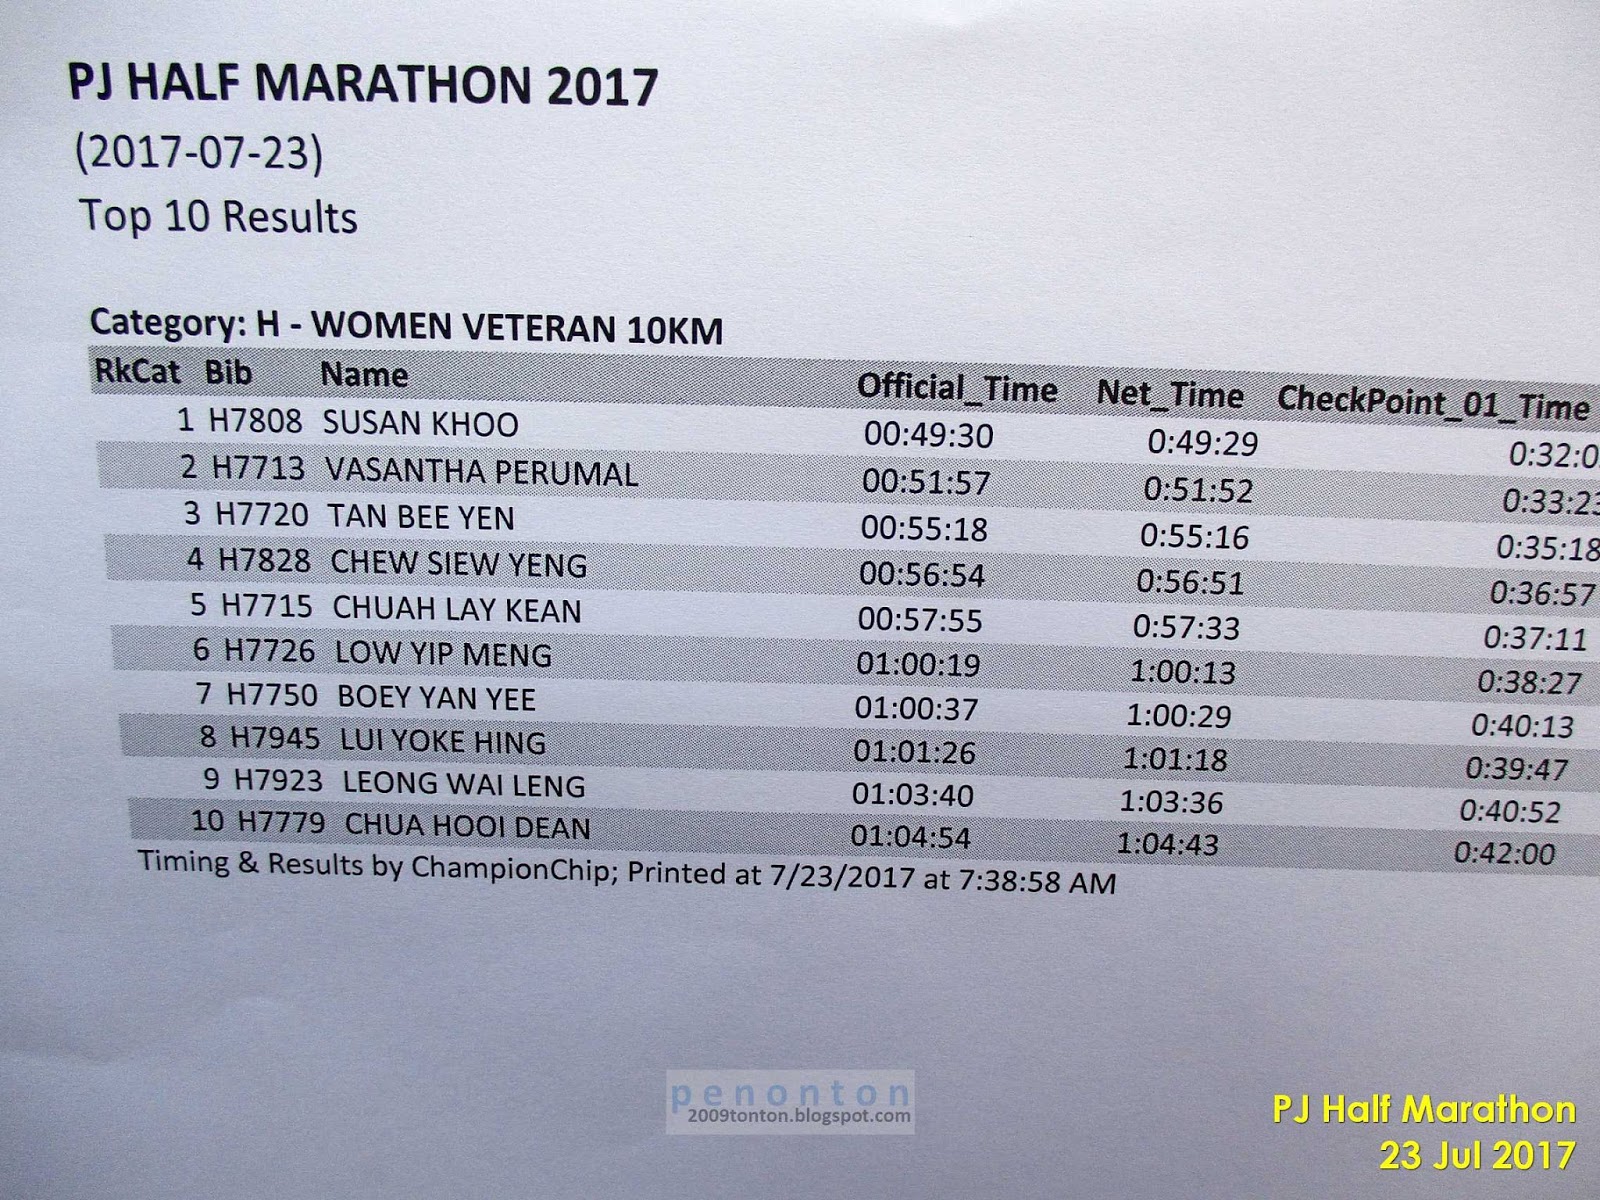 Penonton: PJ Half Marathon 2017 - Top 10 Results